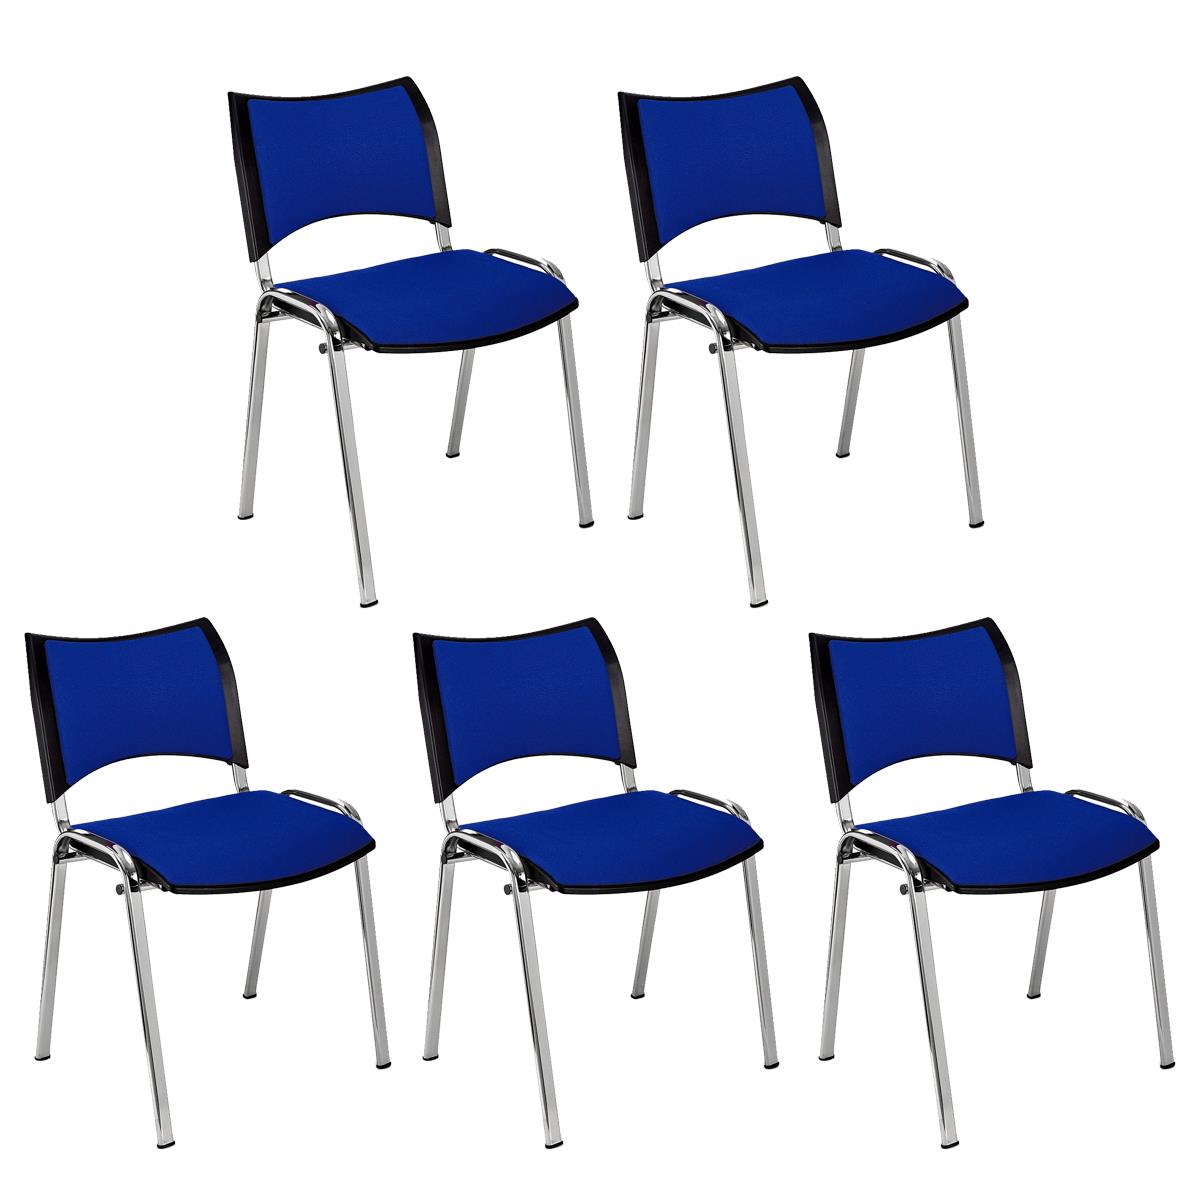 Lote 5 Cadeiras de Visita ROMEL, Prática e Empilhável, Pernas Cromadas, Em Pano, Azul